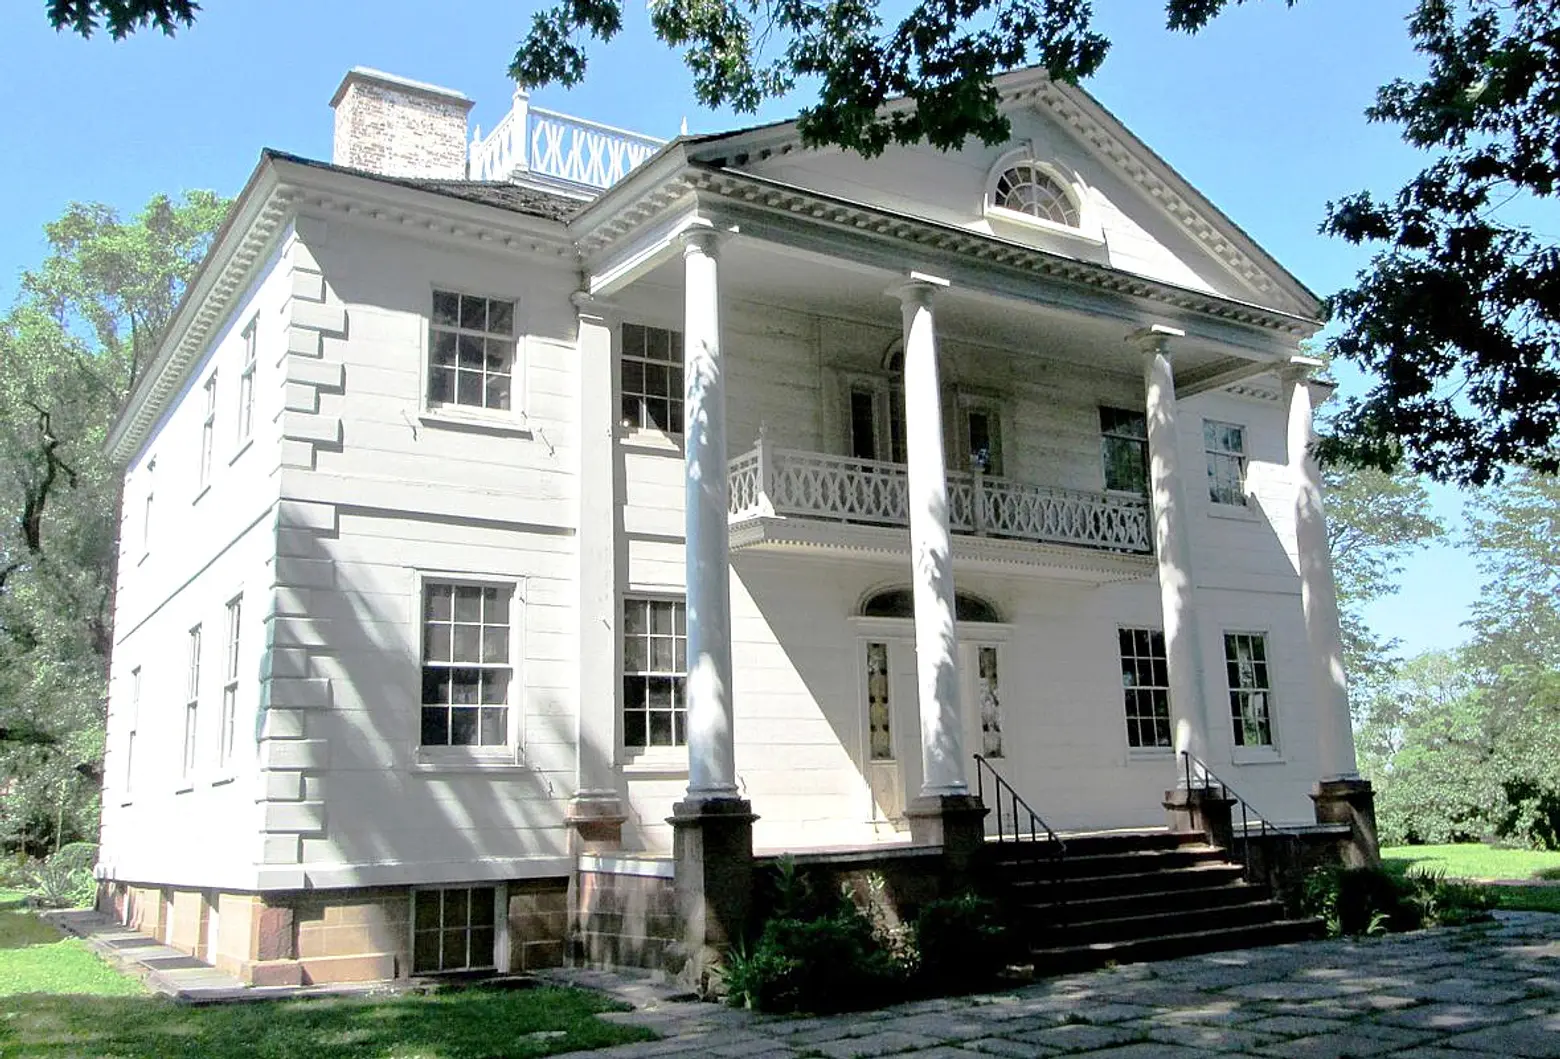 Morris Jumel Mansion